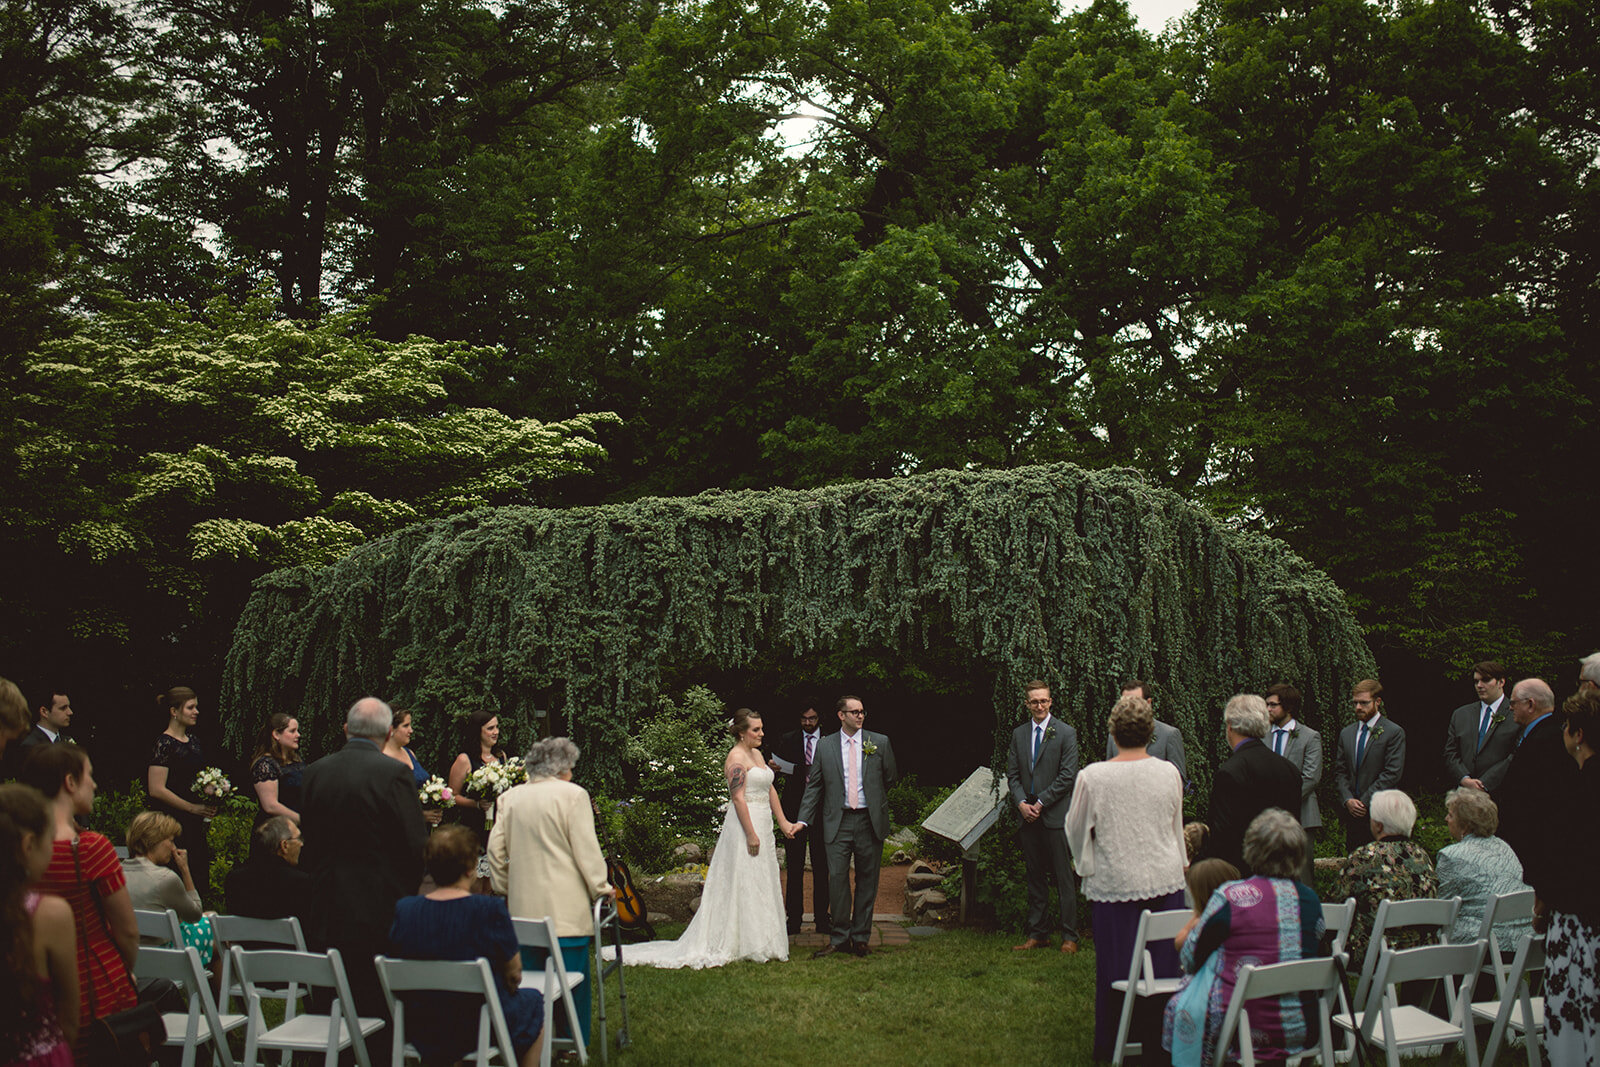 Couple marrying at Elizabeth Park Conservatory Shawnee Custalow